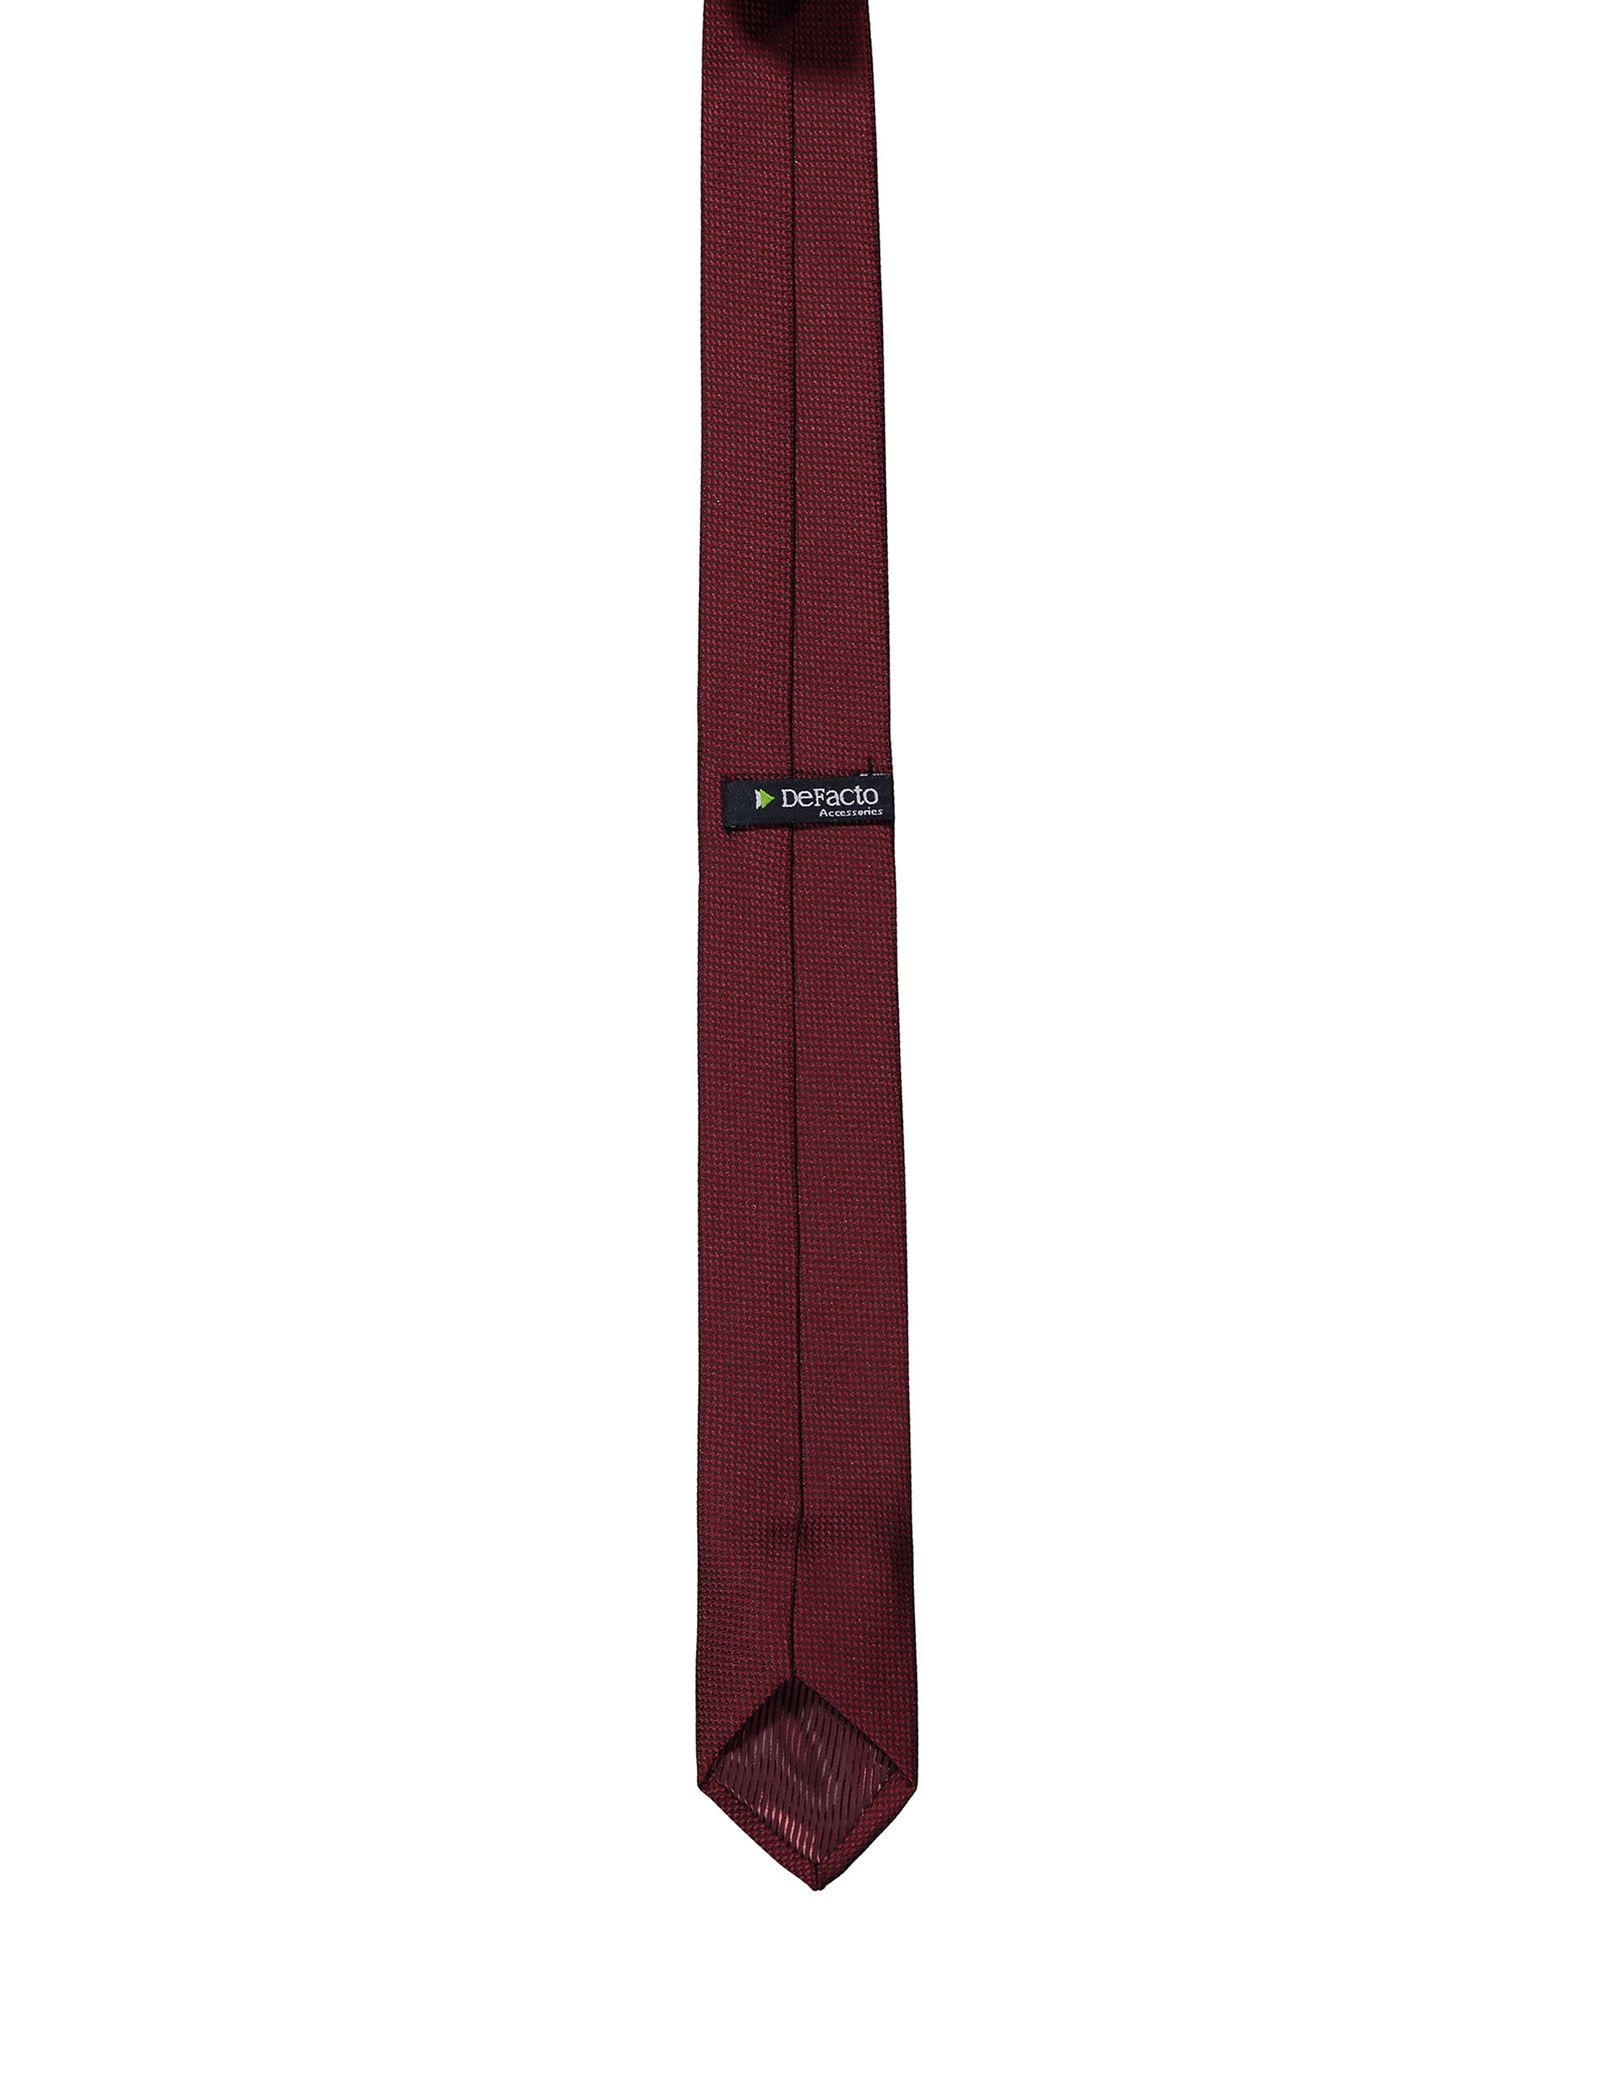 کراوات طرح دار مردانه - دفکتو - زرشکي - 2